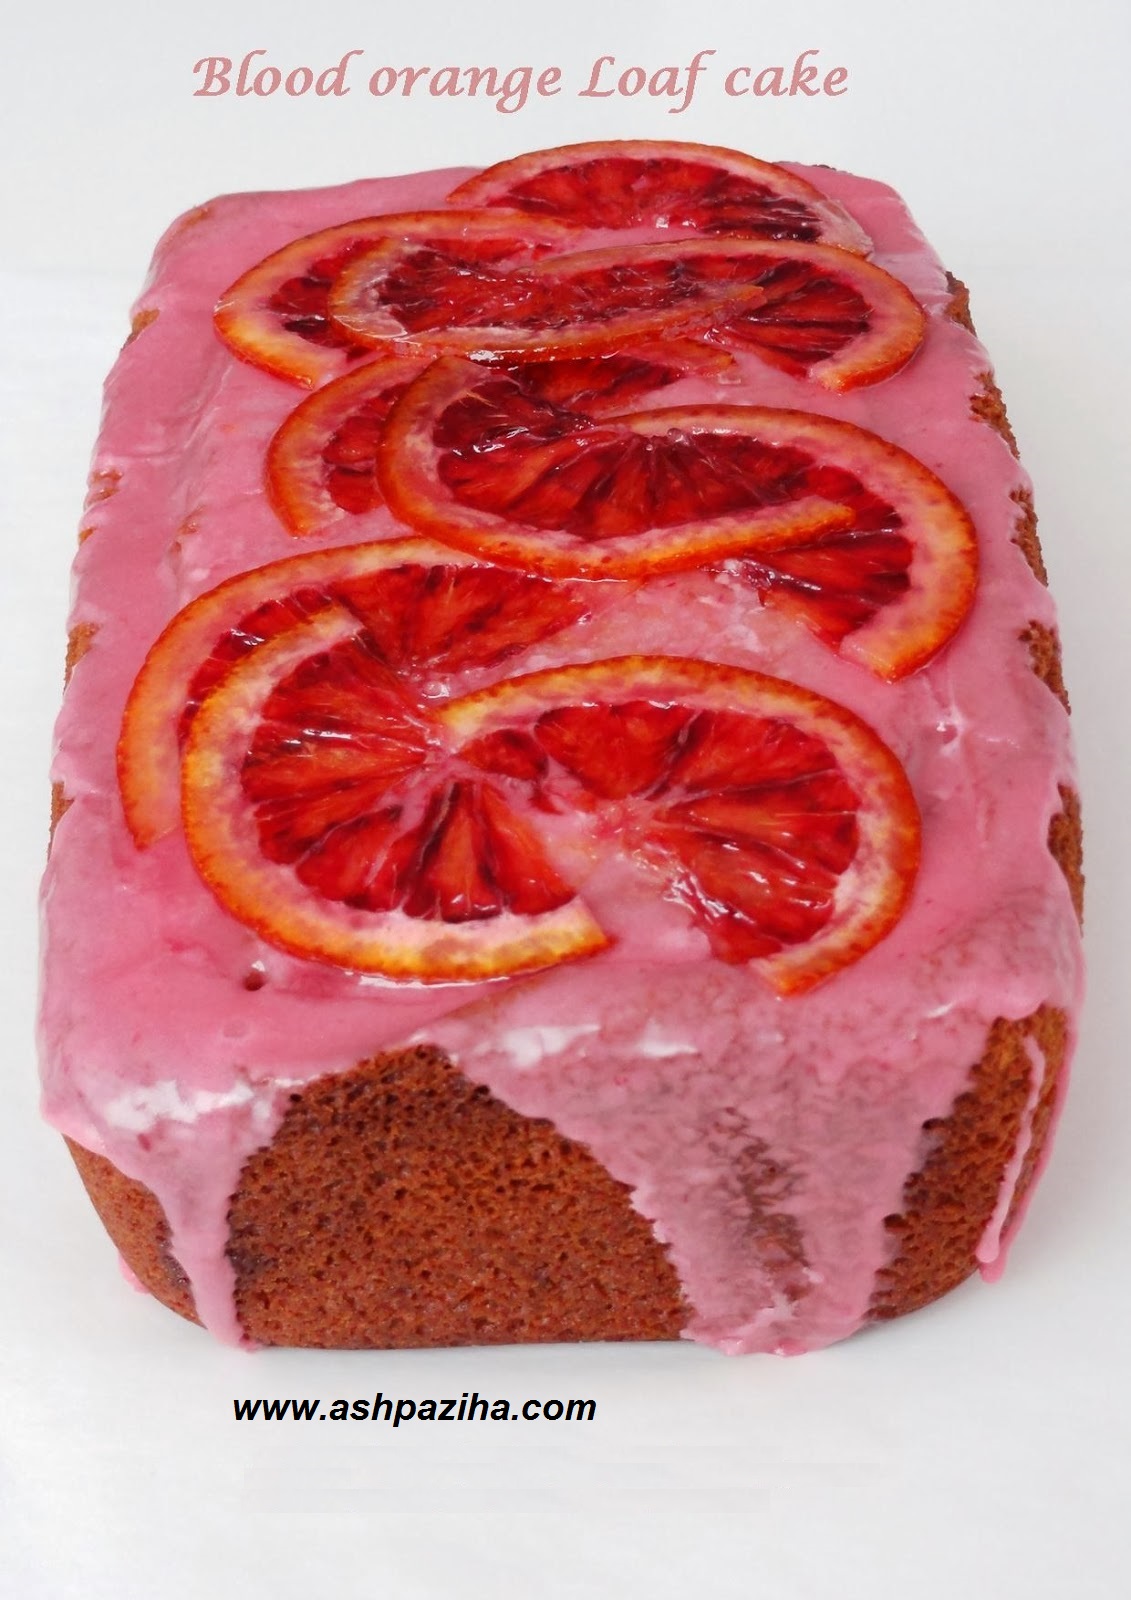 Mode - preparing - cake - Blood orange (2)